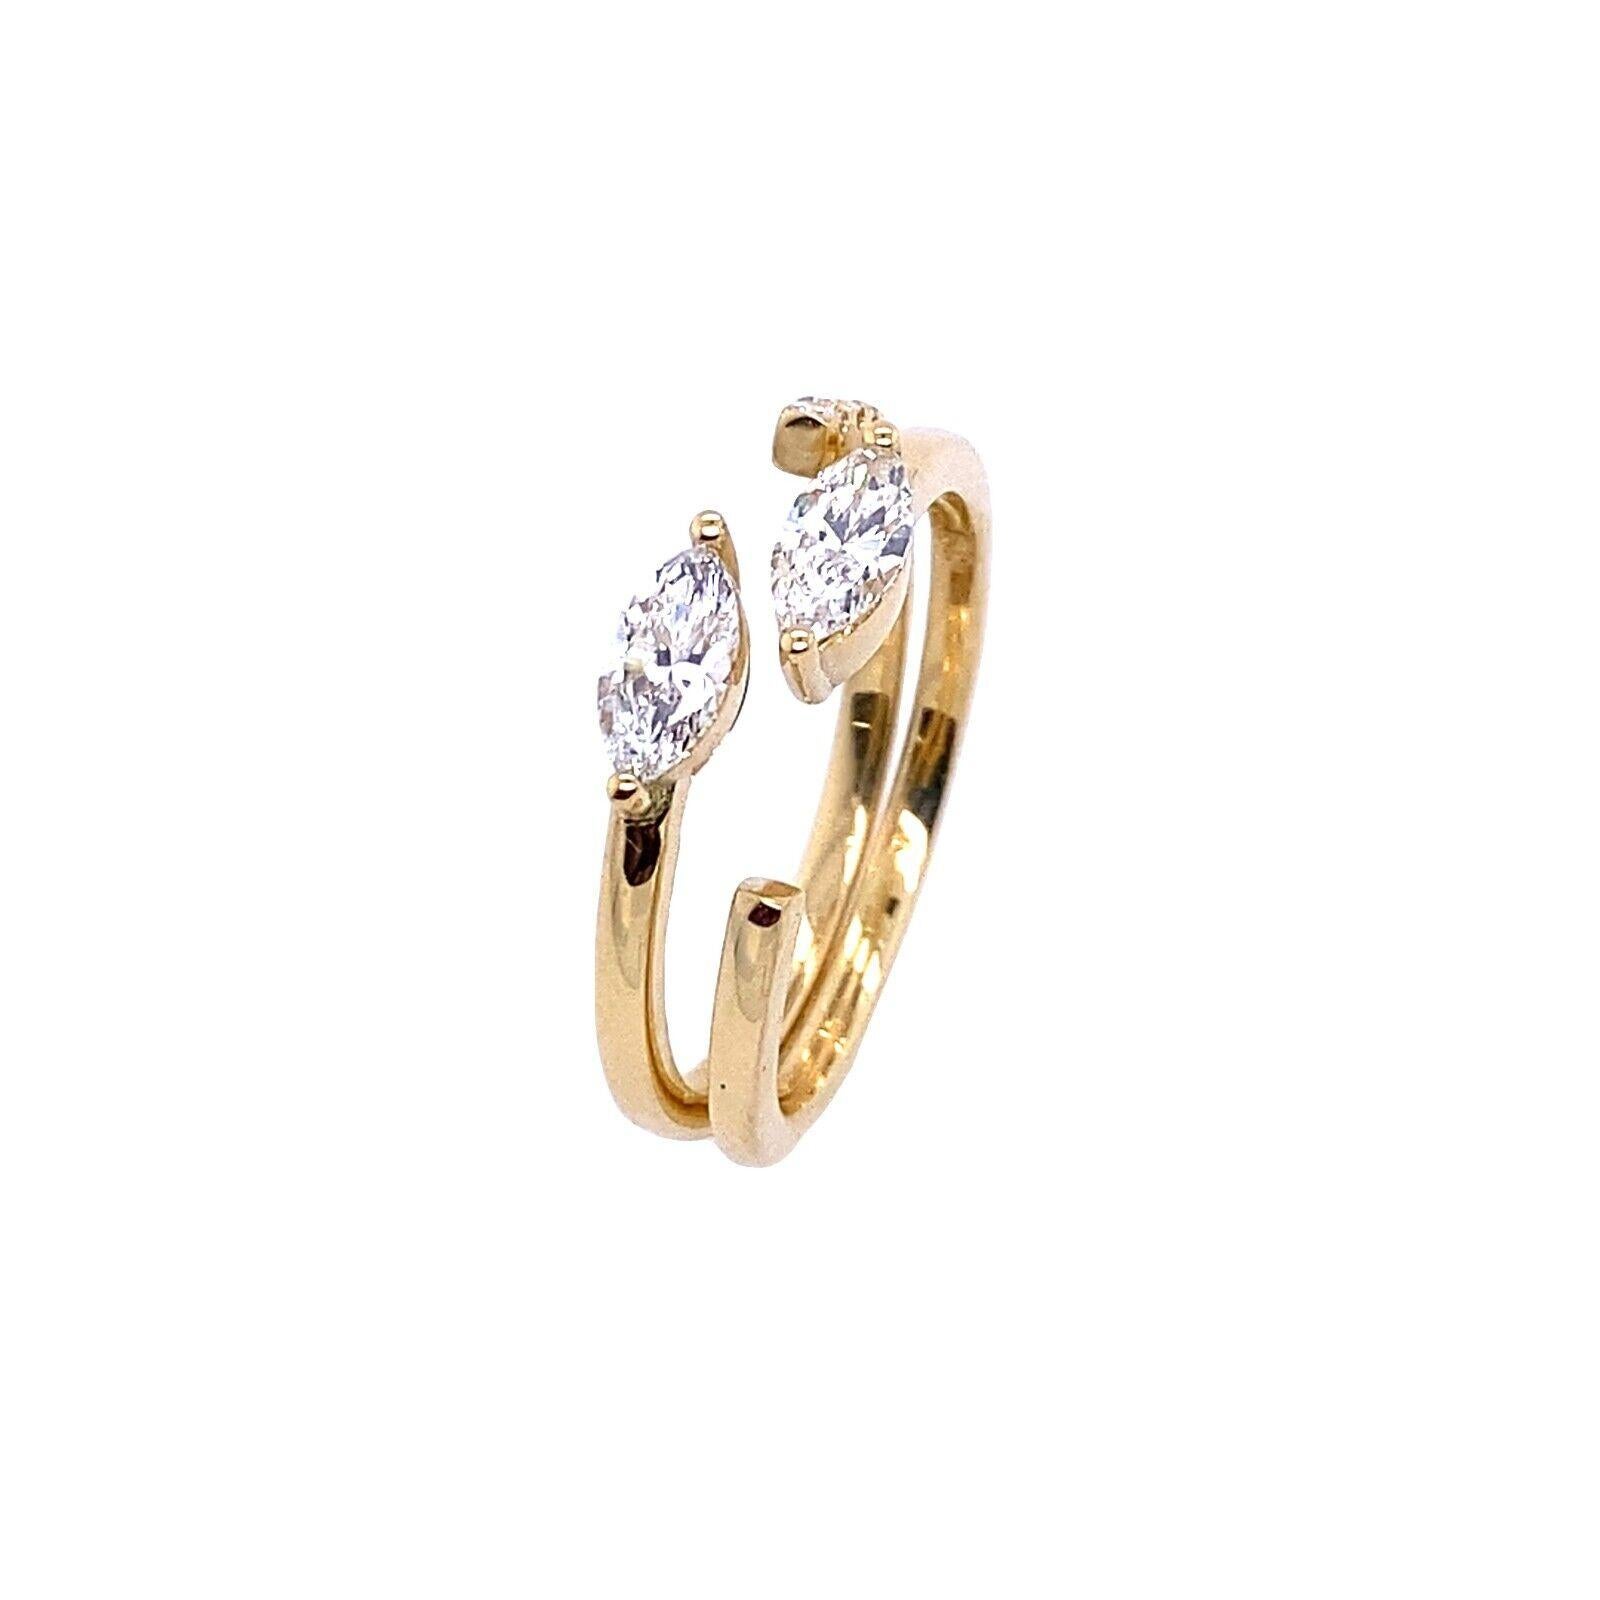 Dieses Paar zusammenpassender Ringe mit Marquise und rundem Diamant ist aus 18-karätigem Gelbgold gefertigt, wobei ein Ring ein einfaches Band mit einer Marquise und der andere ein Band mit gepflasterten Diamanten aufweist. Die Fassungen sind an den